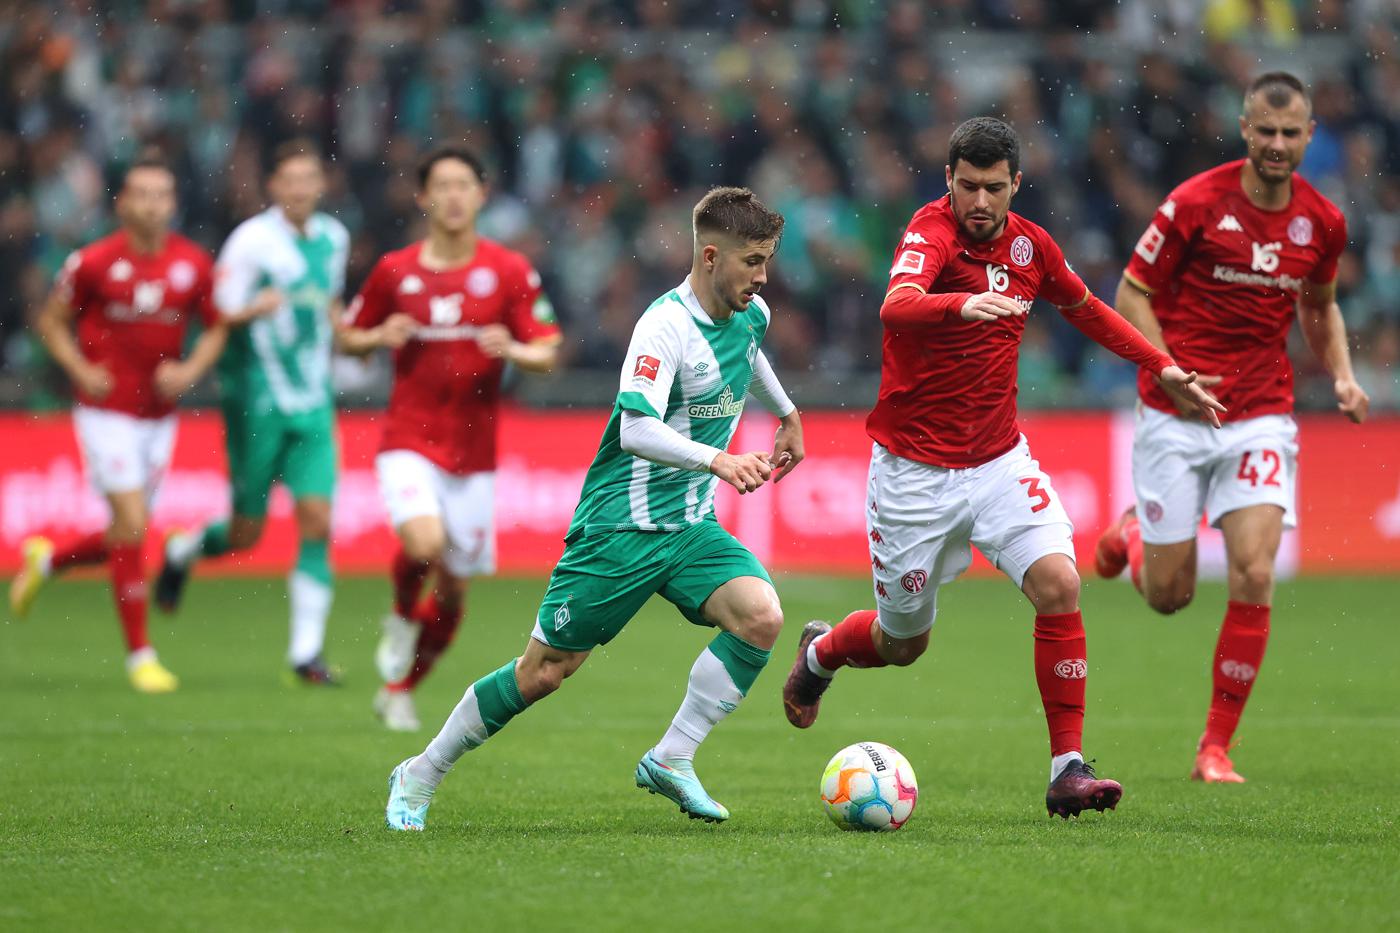 Mainz v Werder - 2-2. Mistrzostwo Niemiec, runda 27. Przegląd meczu, statystyki.